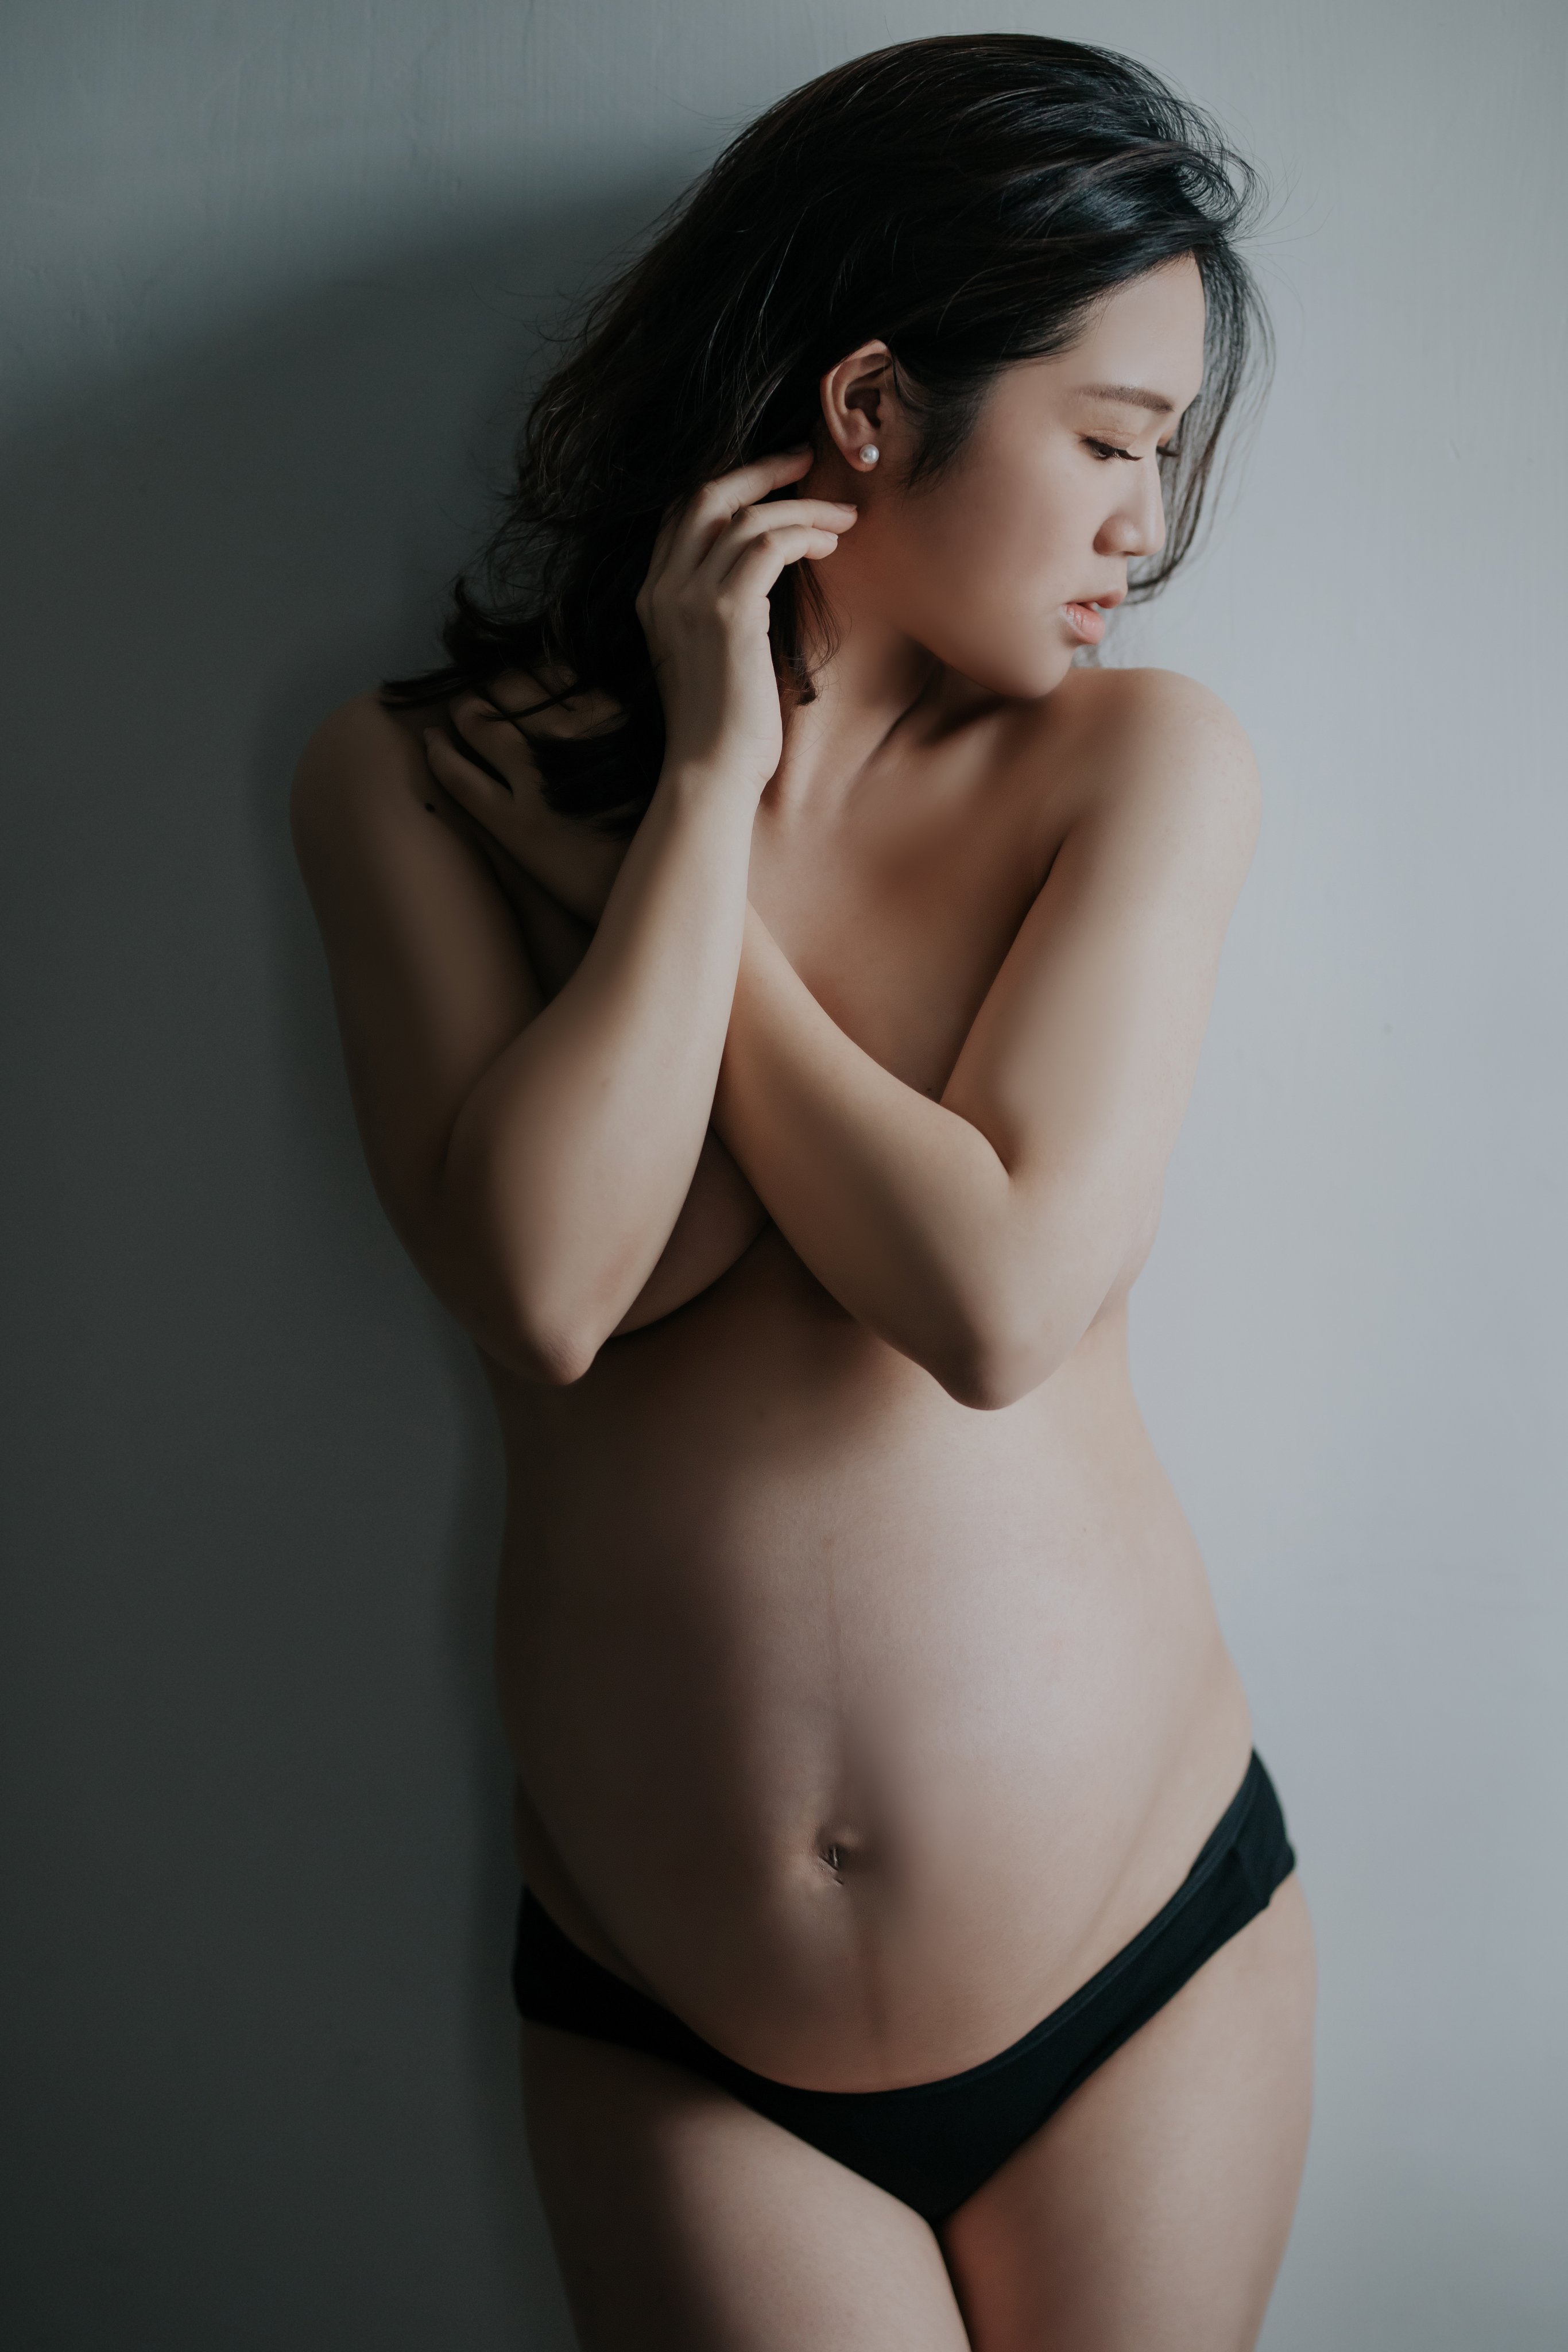 国产孕妇美图分享 纯美图不露点 042304